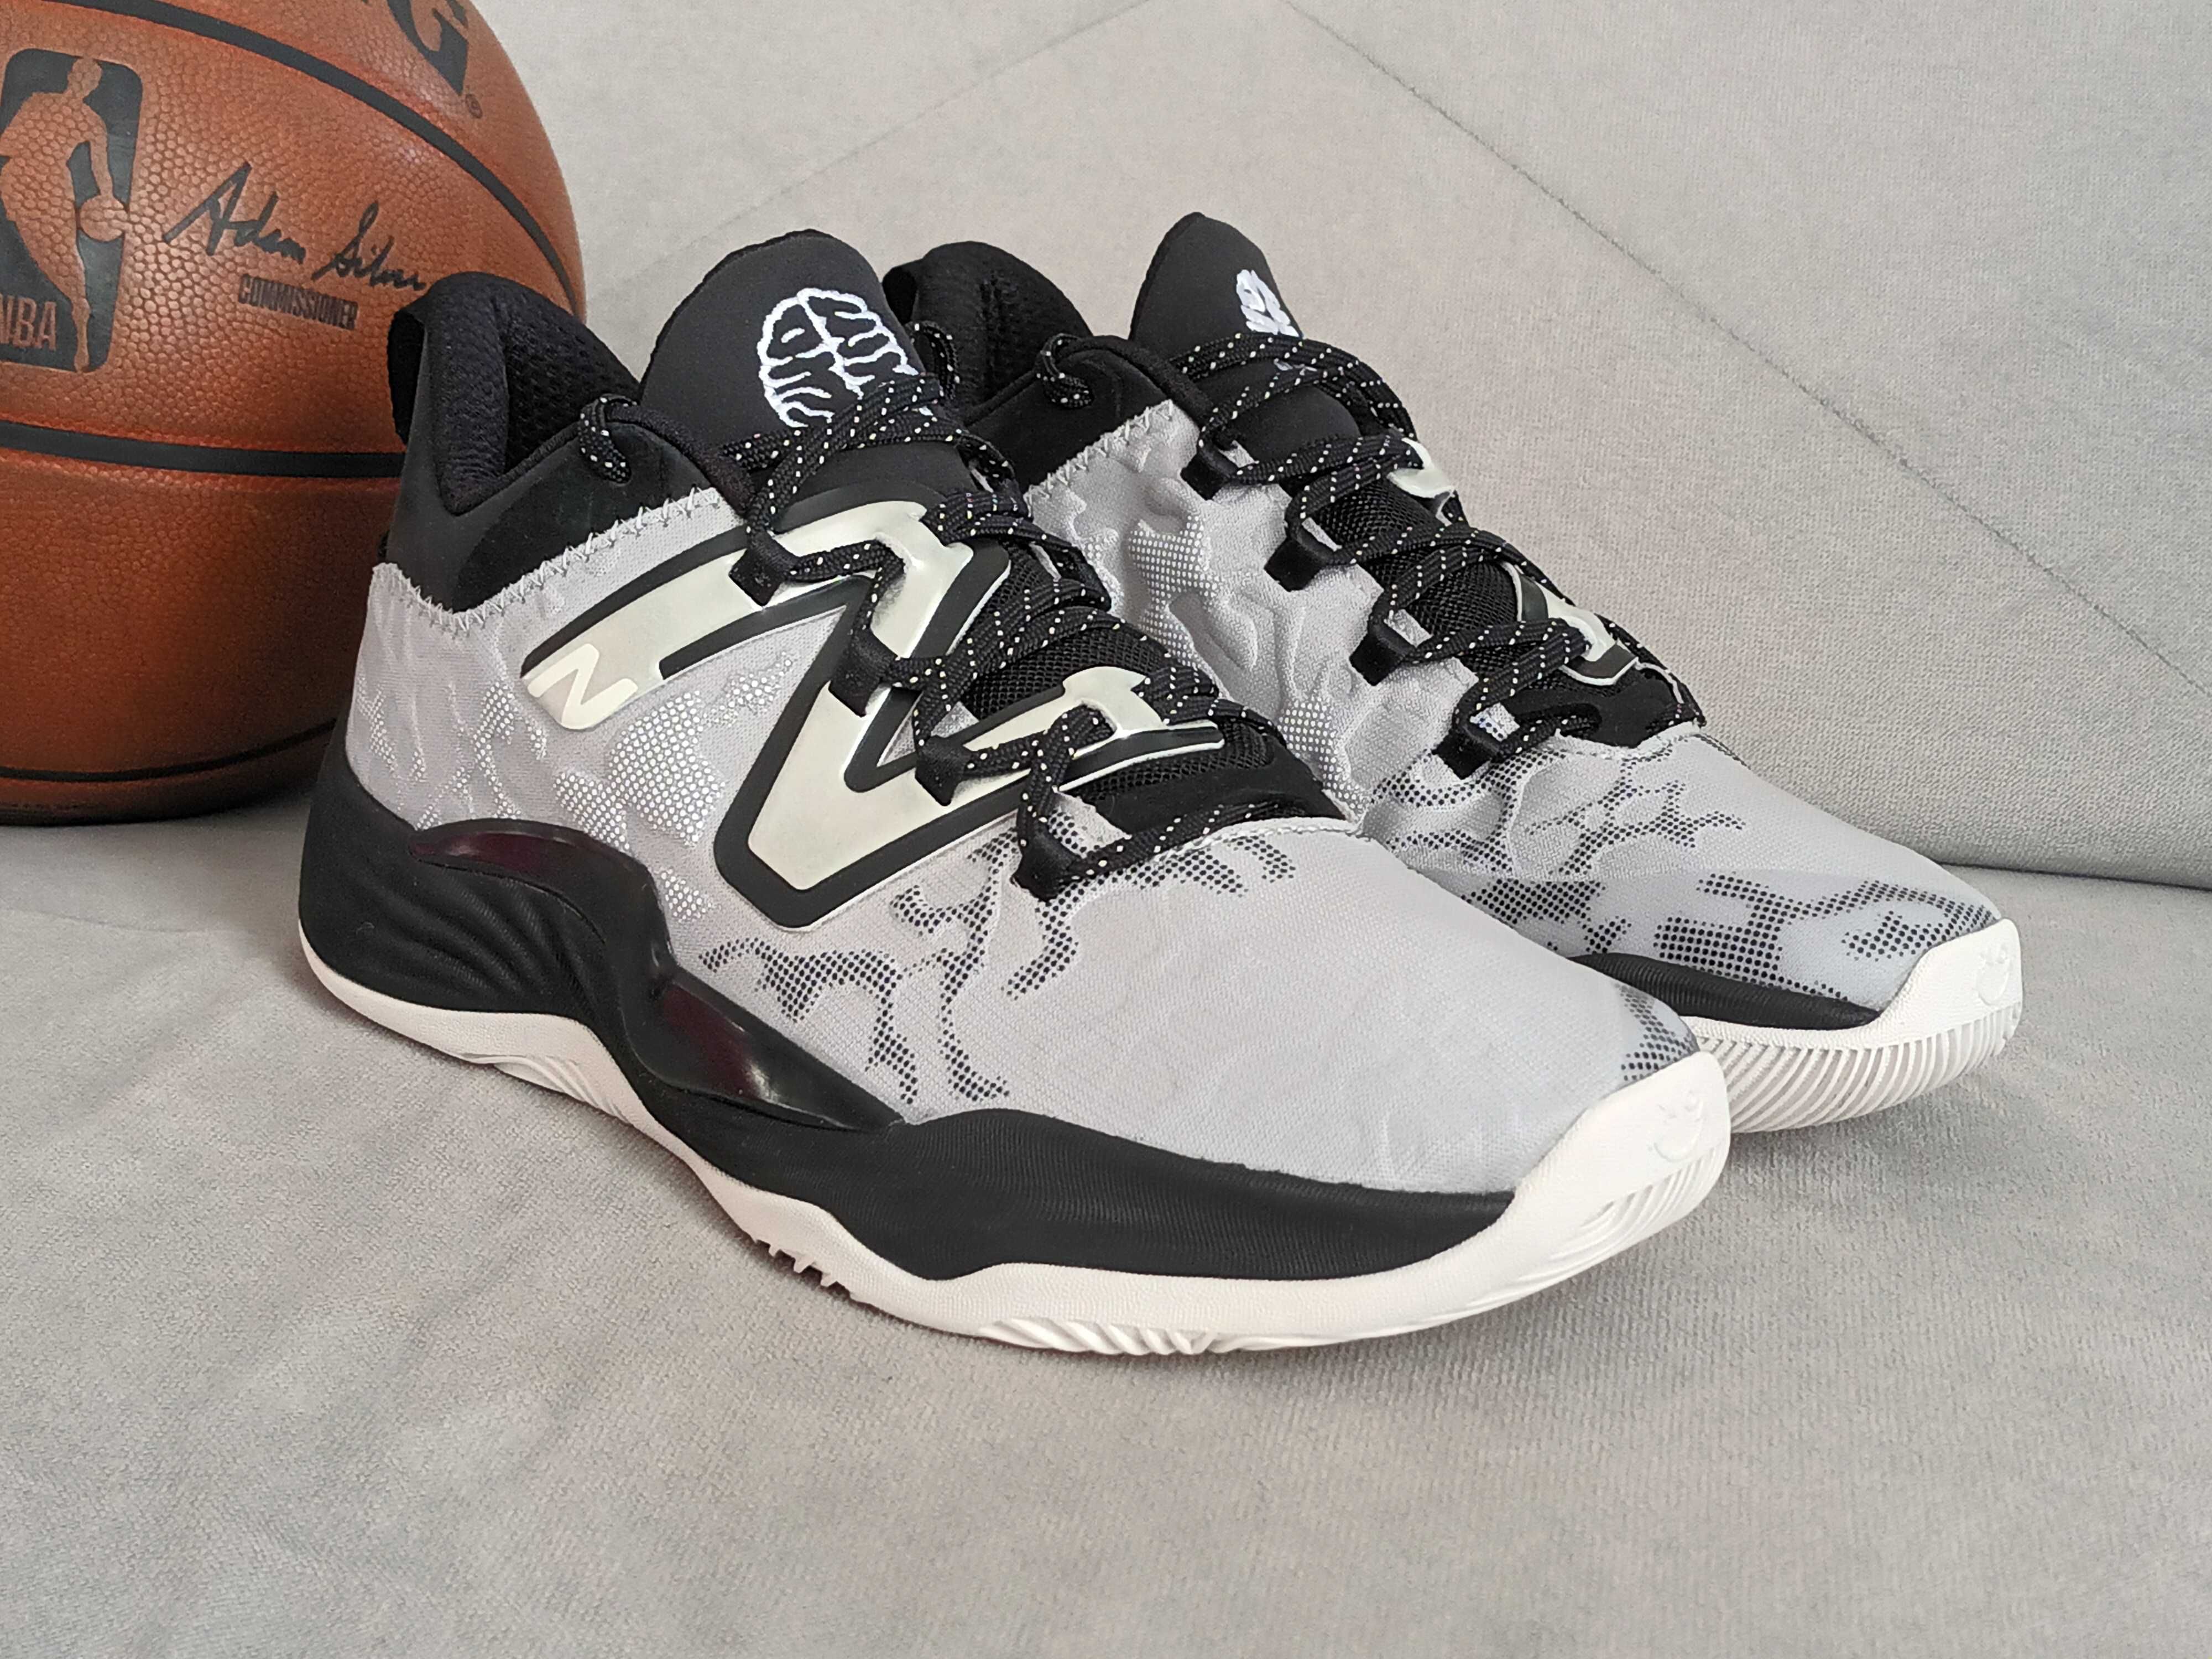 New Balance TWO WXY v3 nowe 43 buty do koszykówki nba Jordan kobe ae1